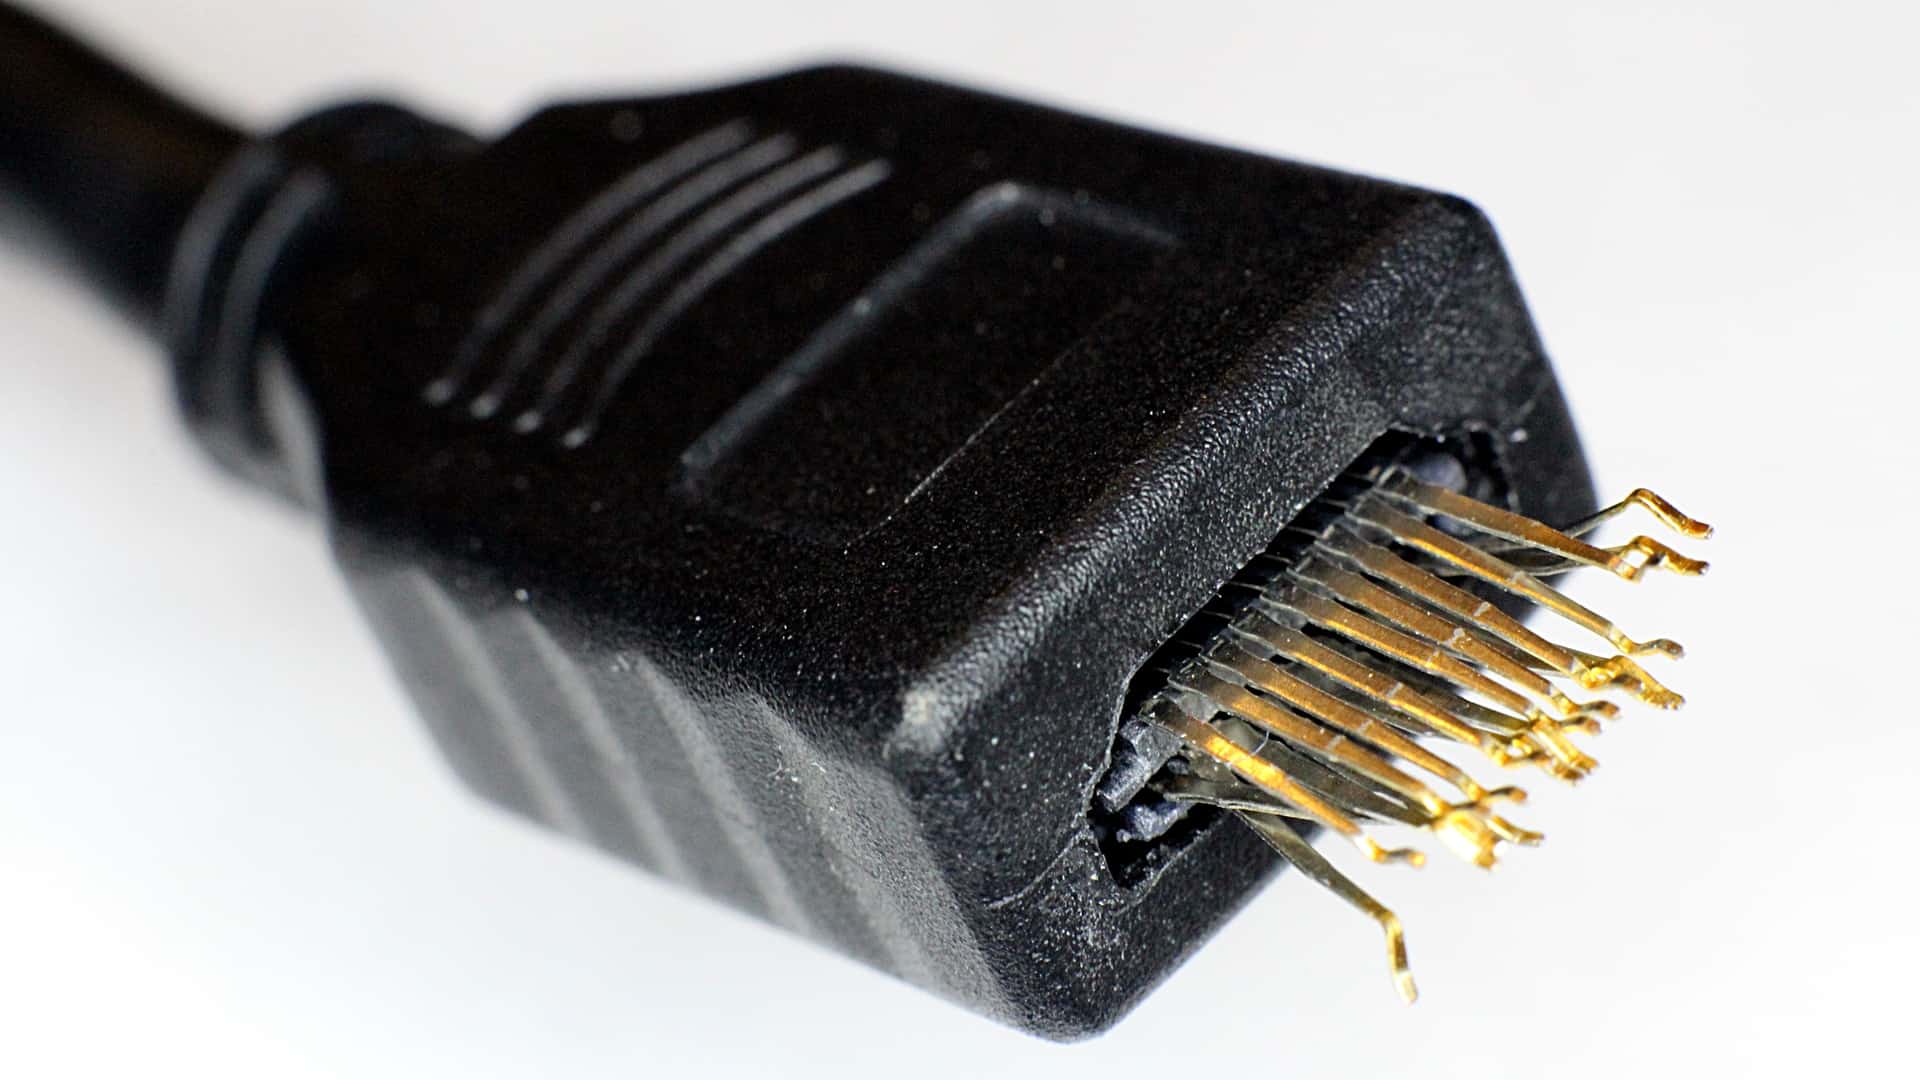 HDMI connector damage